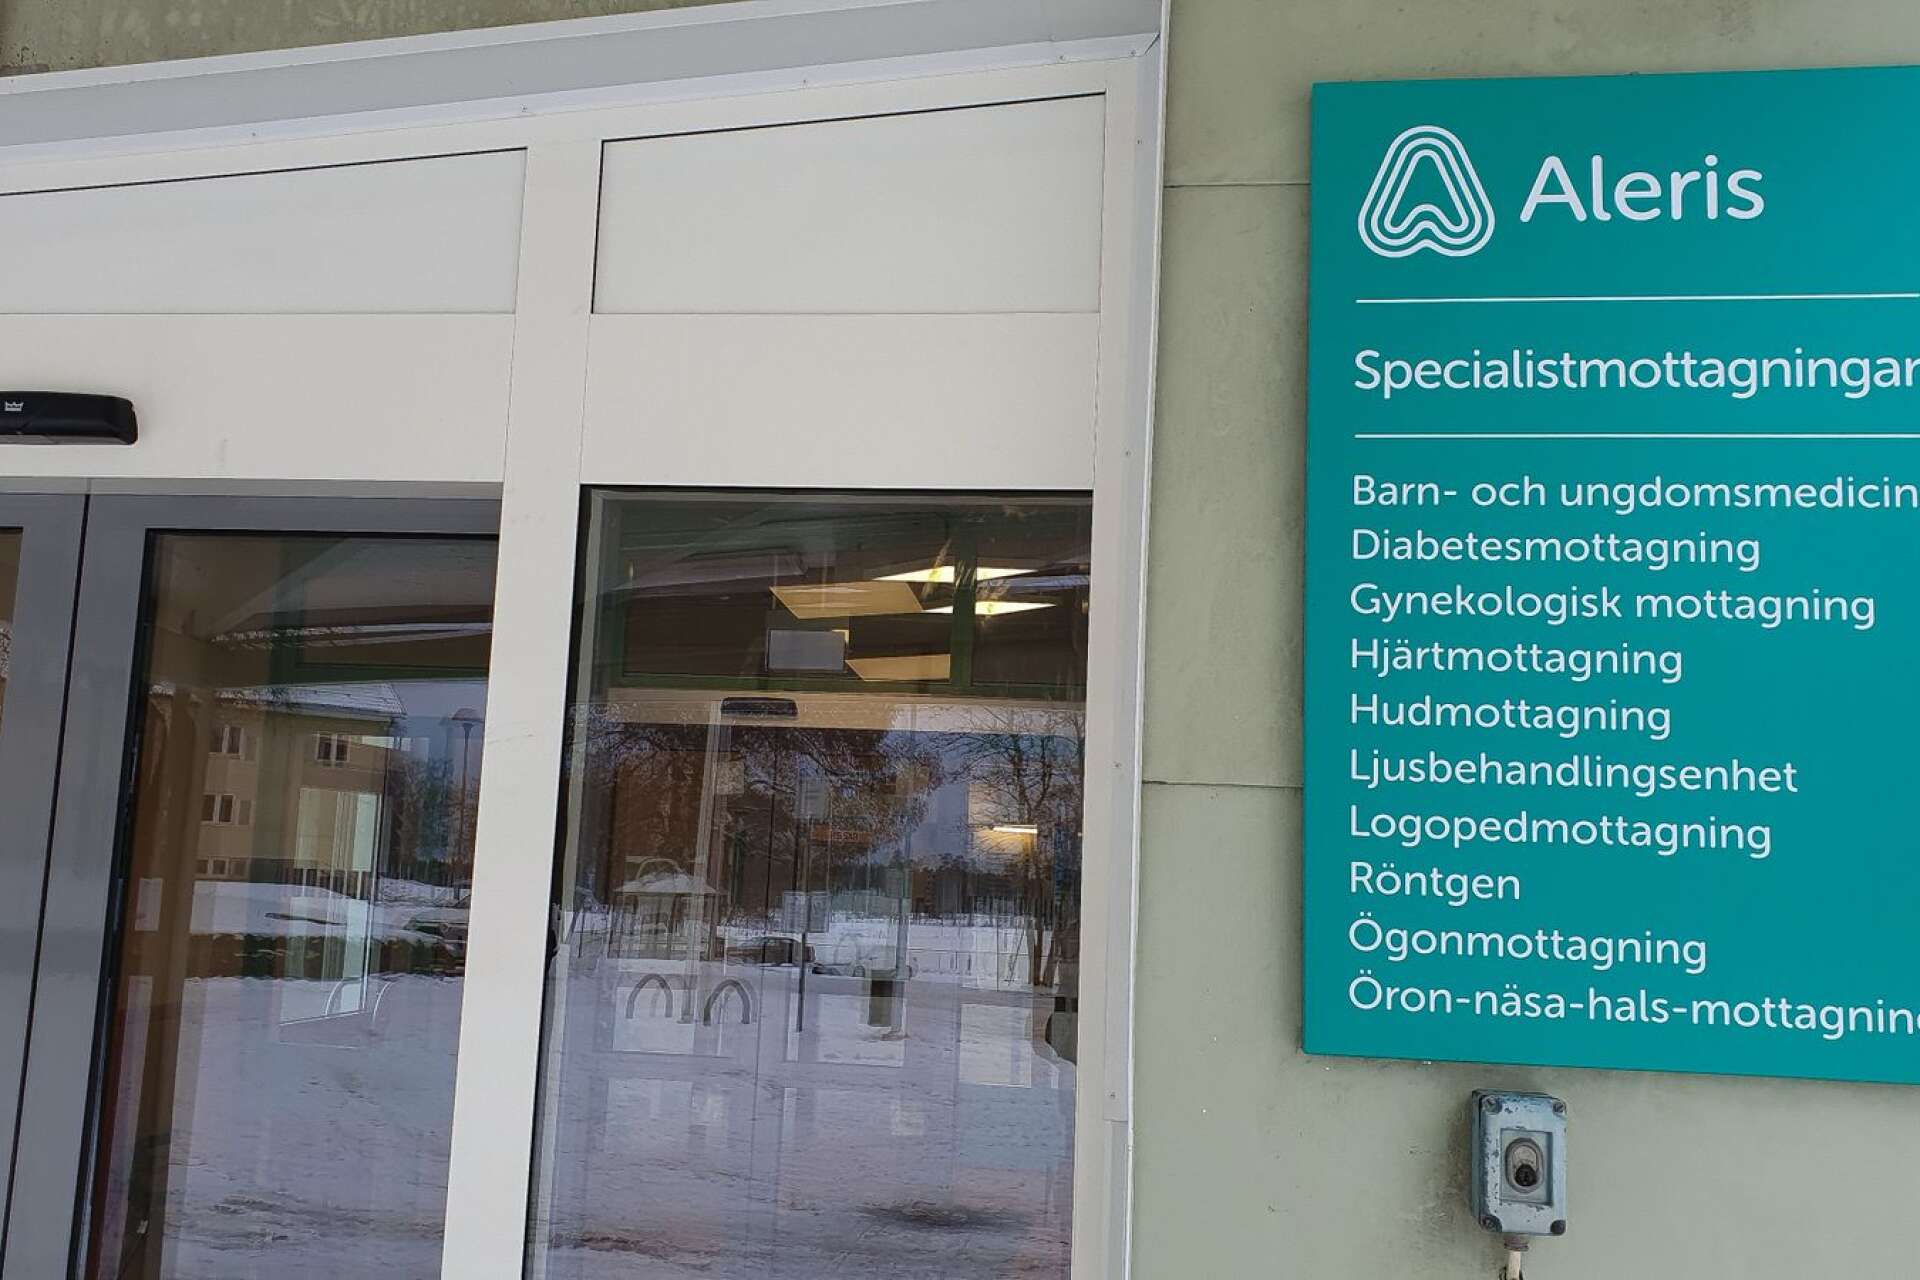 Norra hälso- och sjukvårdsnämnden väntas i februari ta beslut om upphandlingen av öppen somatisk vård på närsjukhusen.